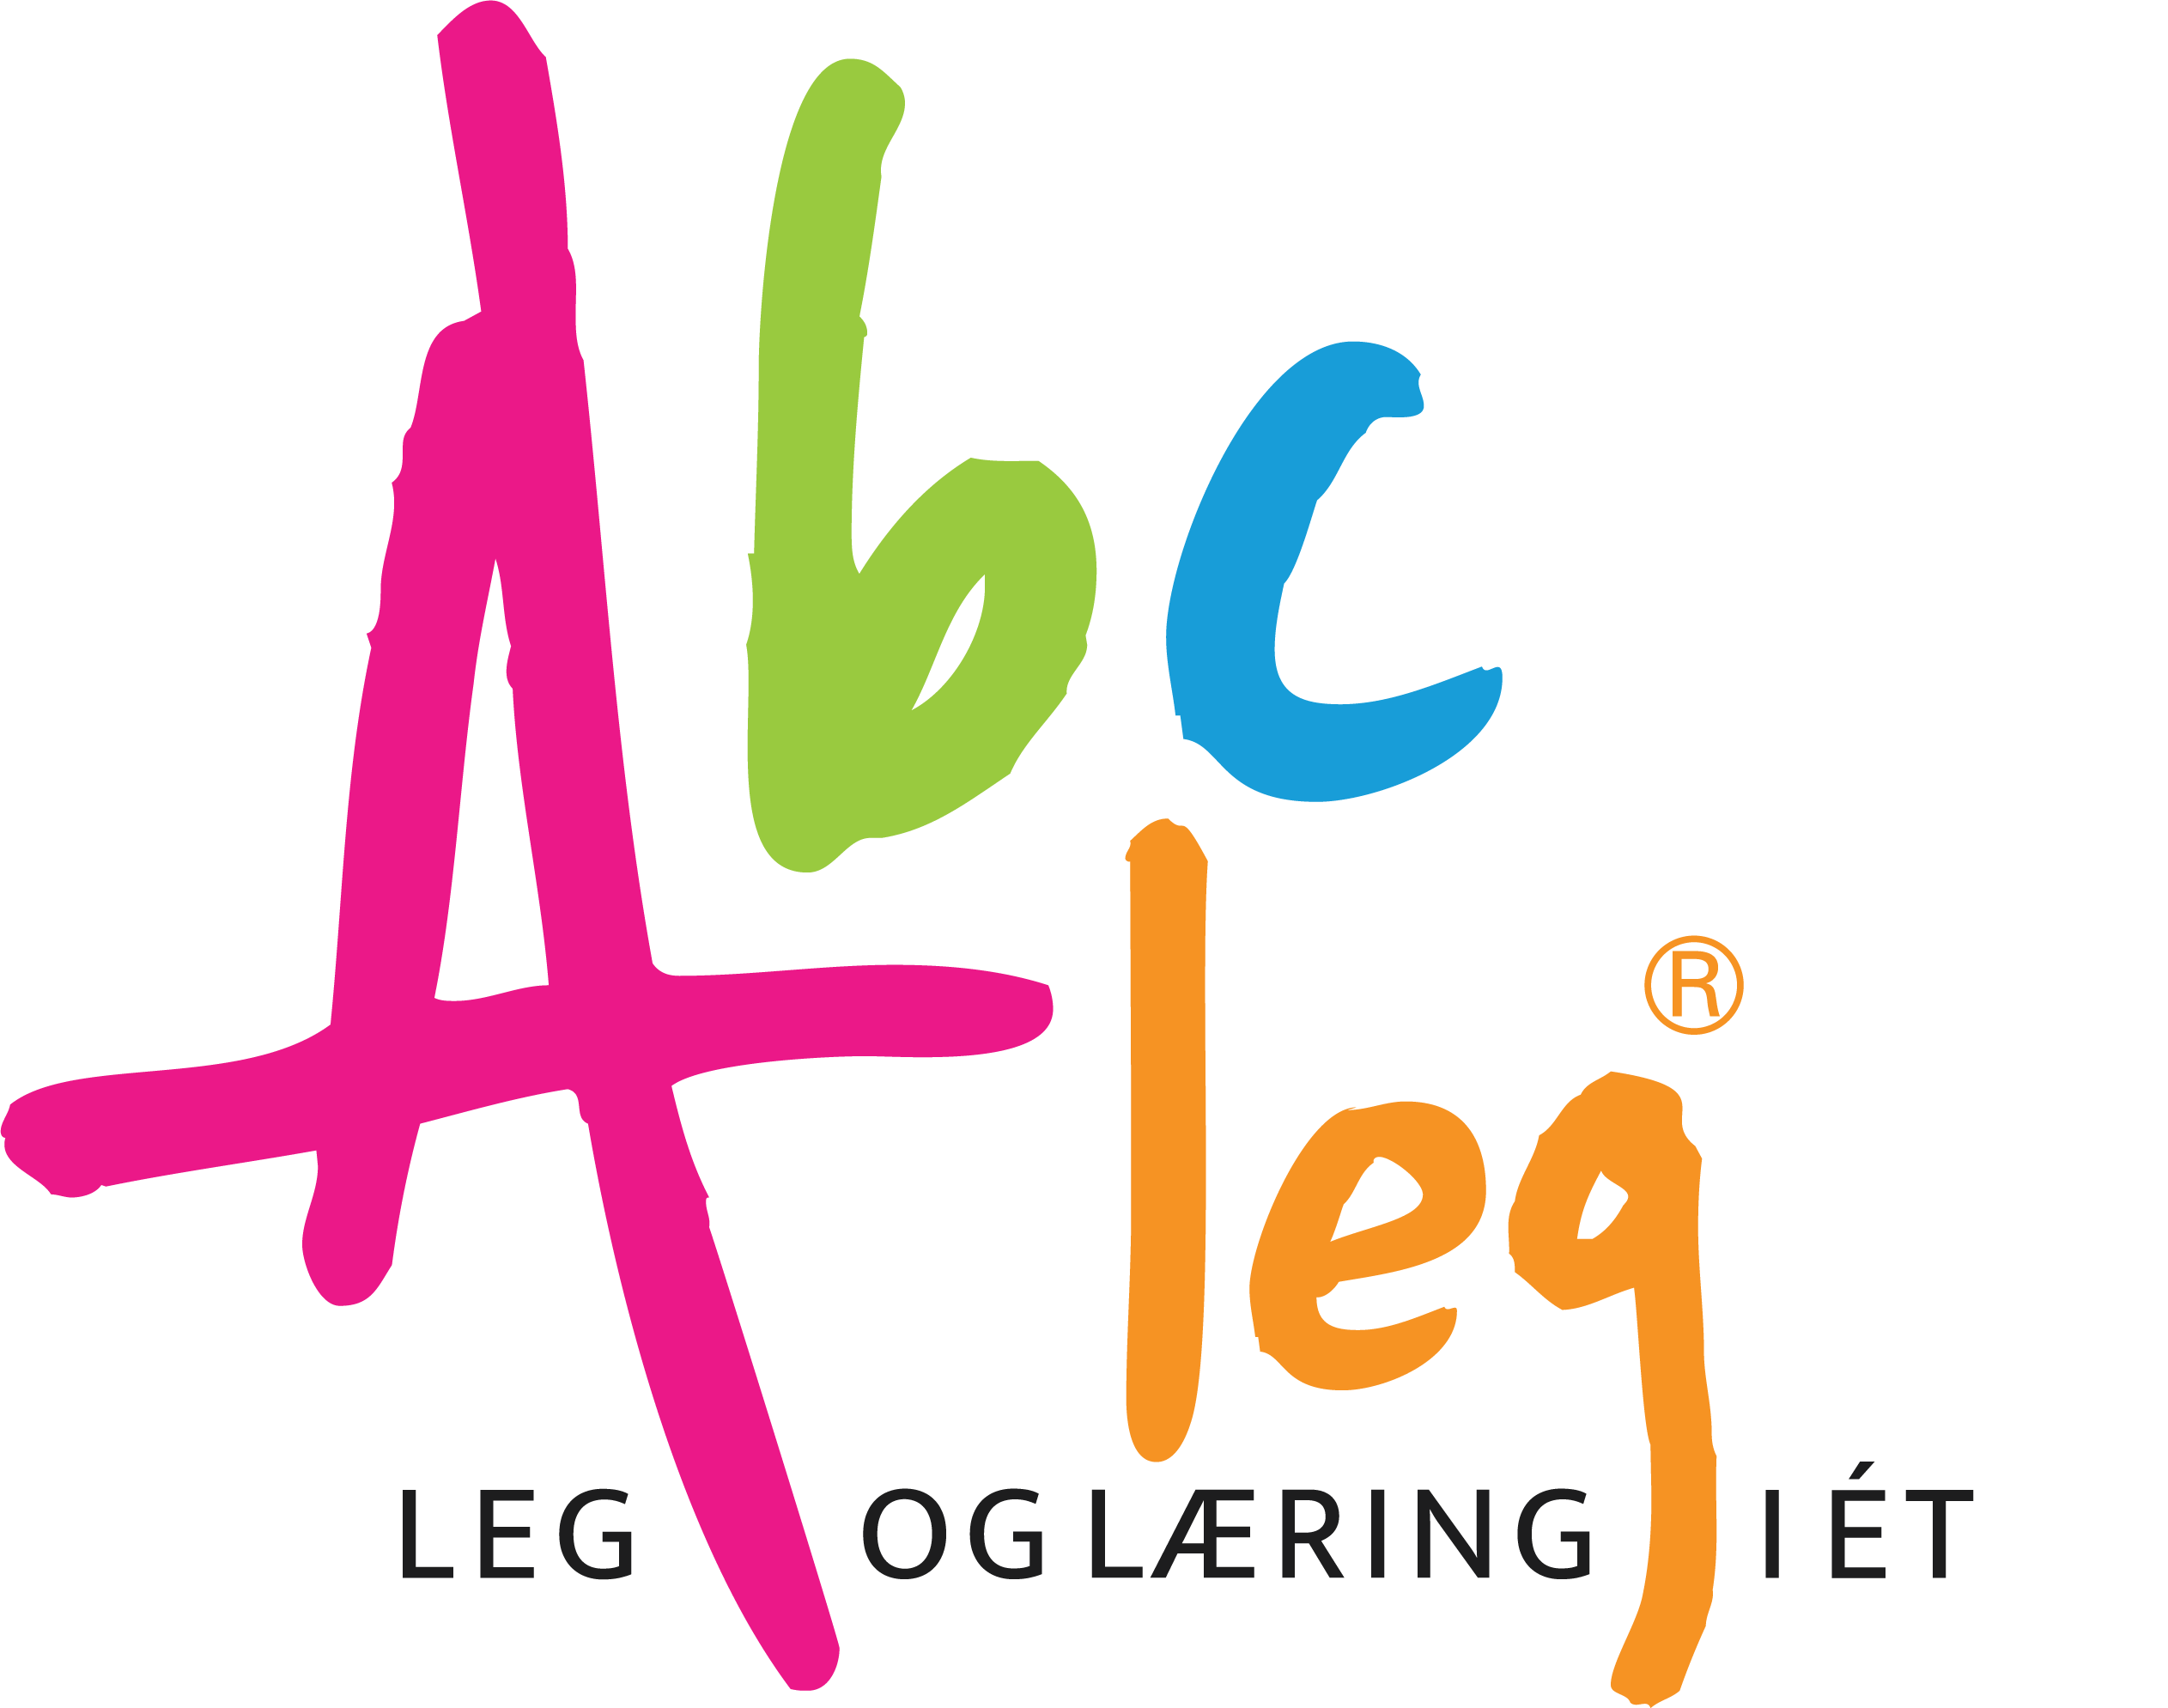 ABC Leg